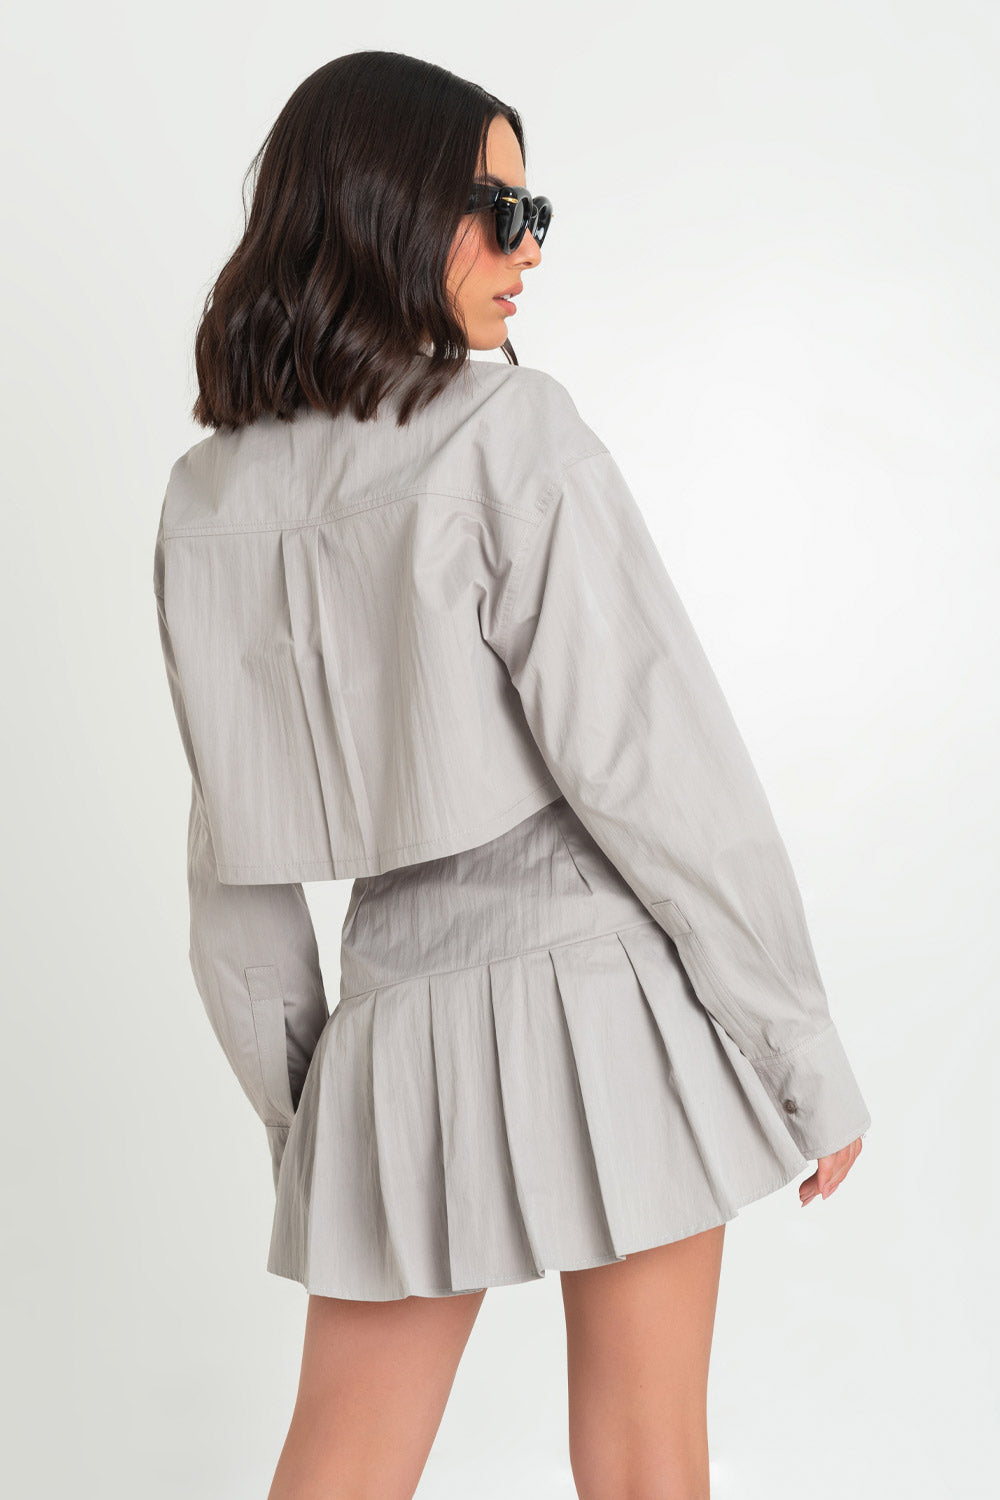 Falda short corto de cintura alta con pretina ancha, tableado en bajo y trabillas decorativas laterales con hebillas en contraste. Cierre lateral con cremallera oculta.